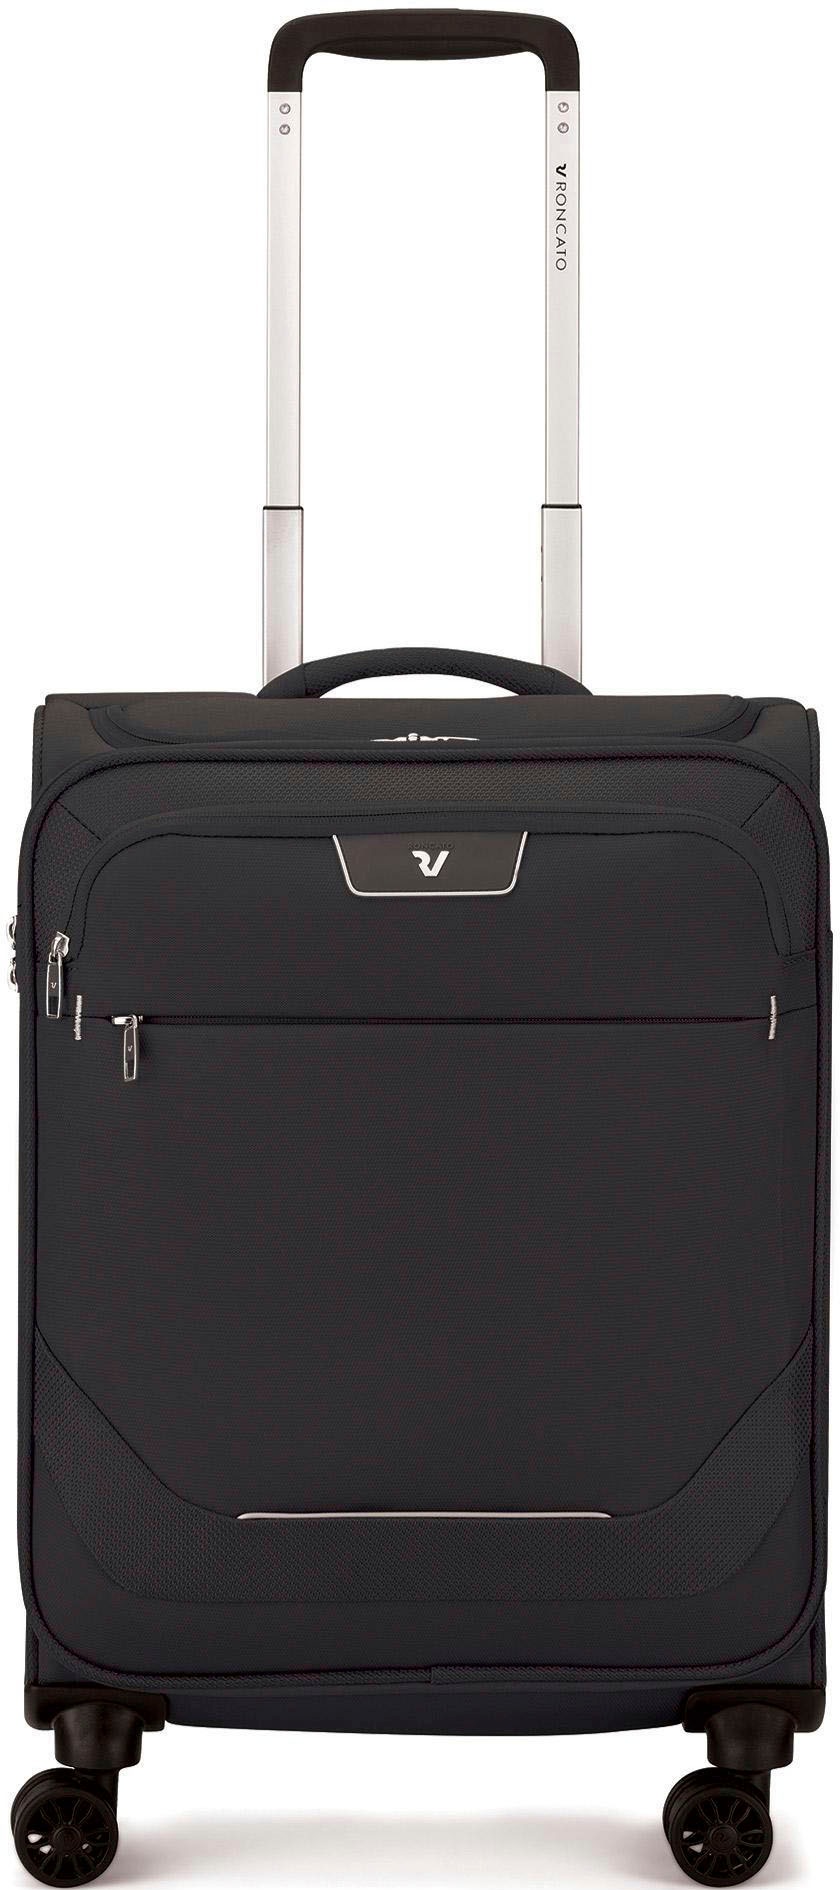 RONCATO Handgepäck-Trolley »Joy Carry-on, 55 cm, schwarz«, 4 Rollen, Handgepäck-Koffer Reisekoffer mit Volumenerweiterung und TSA Schloss